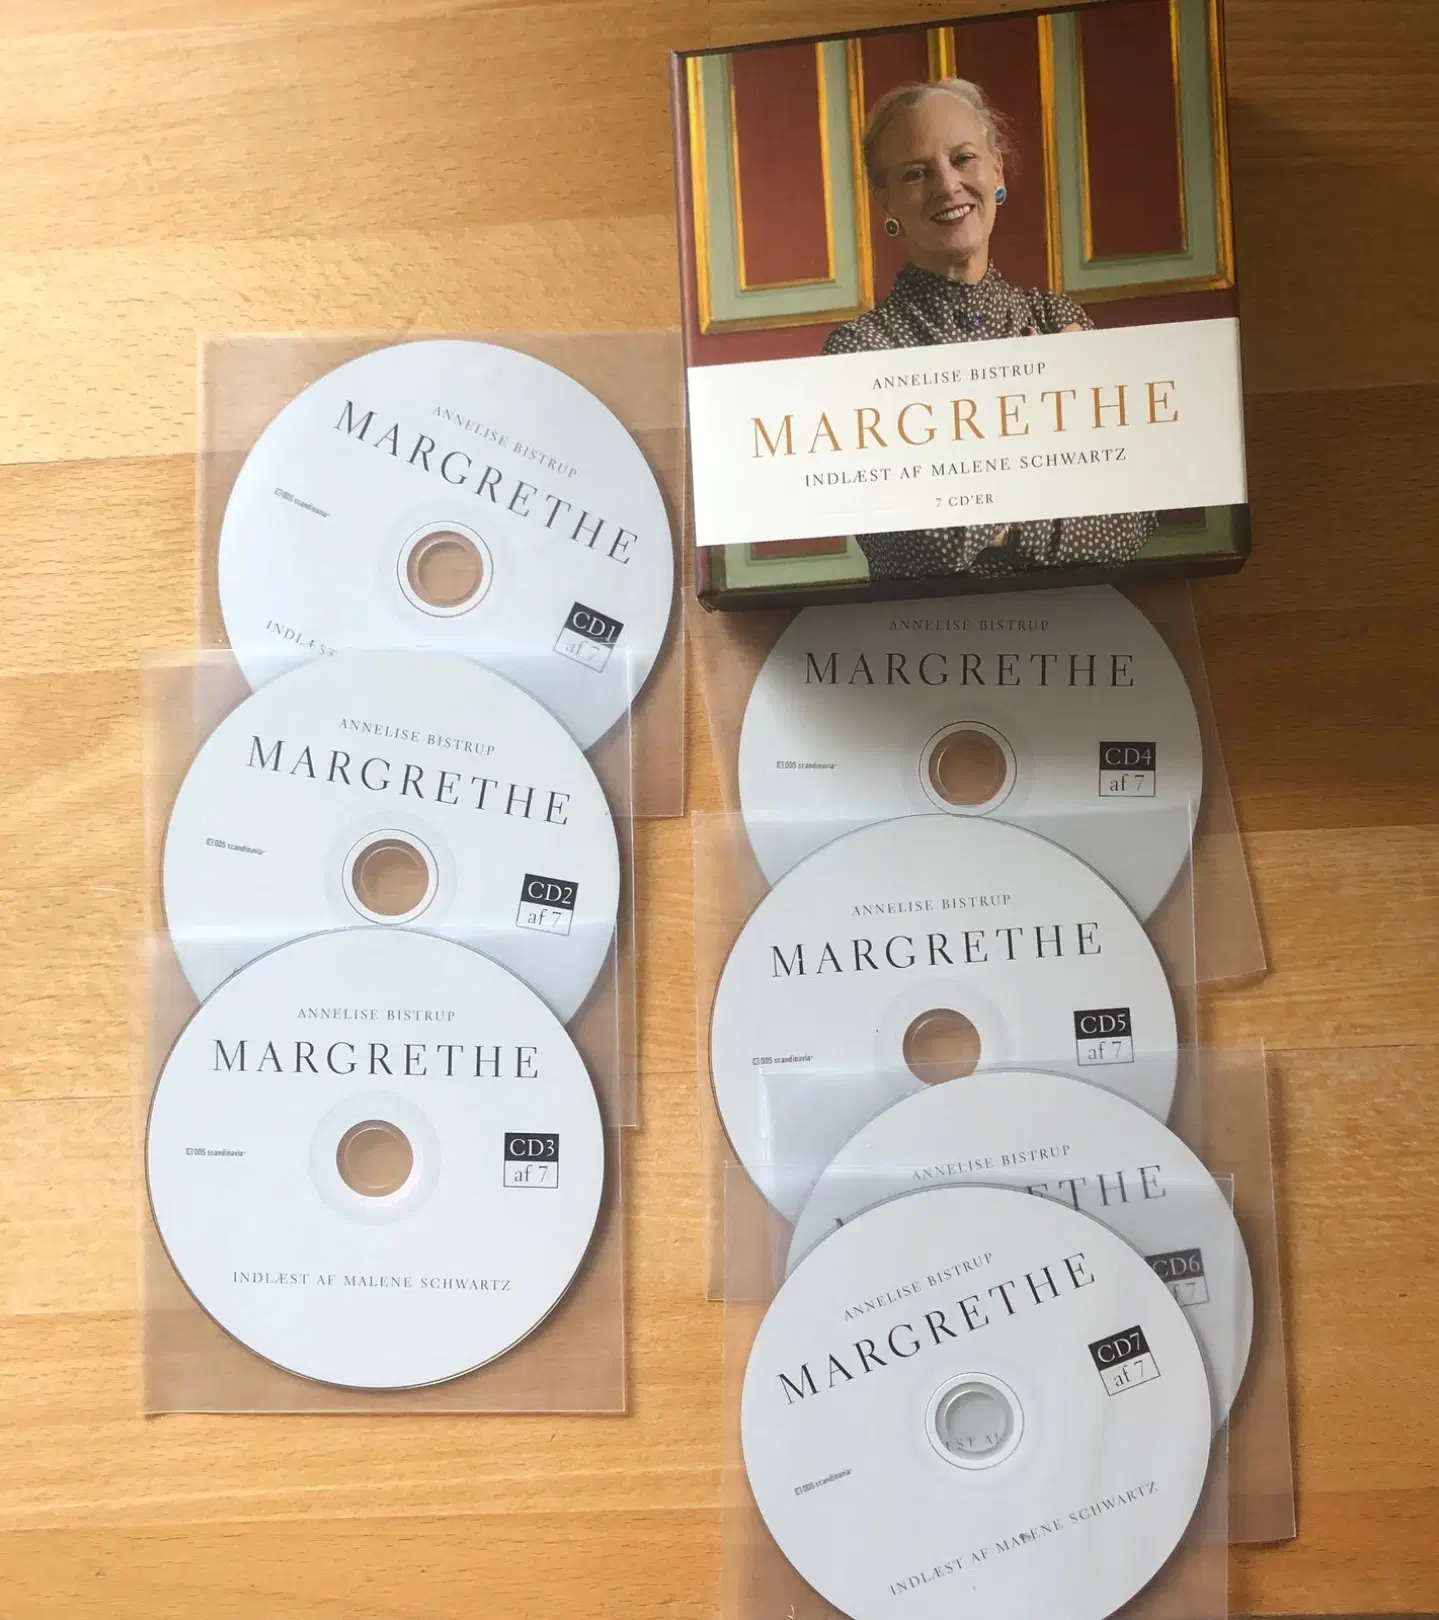 Margrethe (vores dronning) - Lydbog 7 cd boks